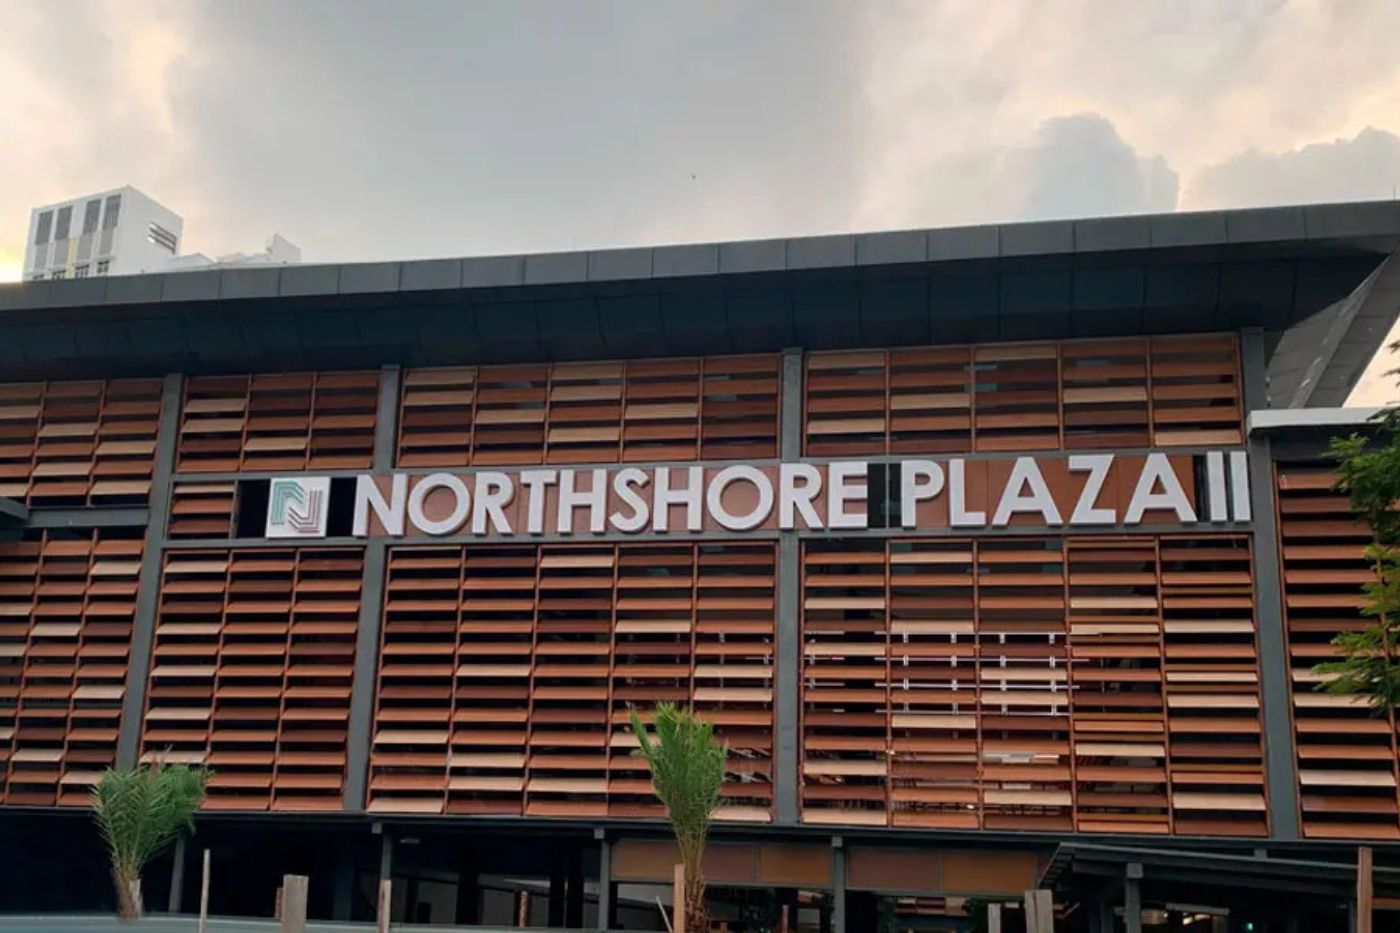 North shore Plaza 2